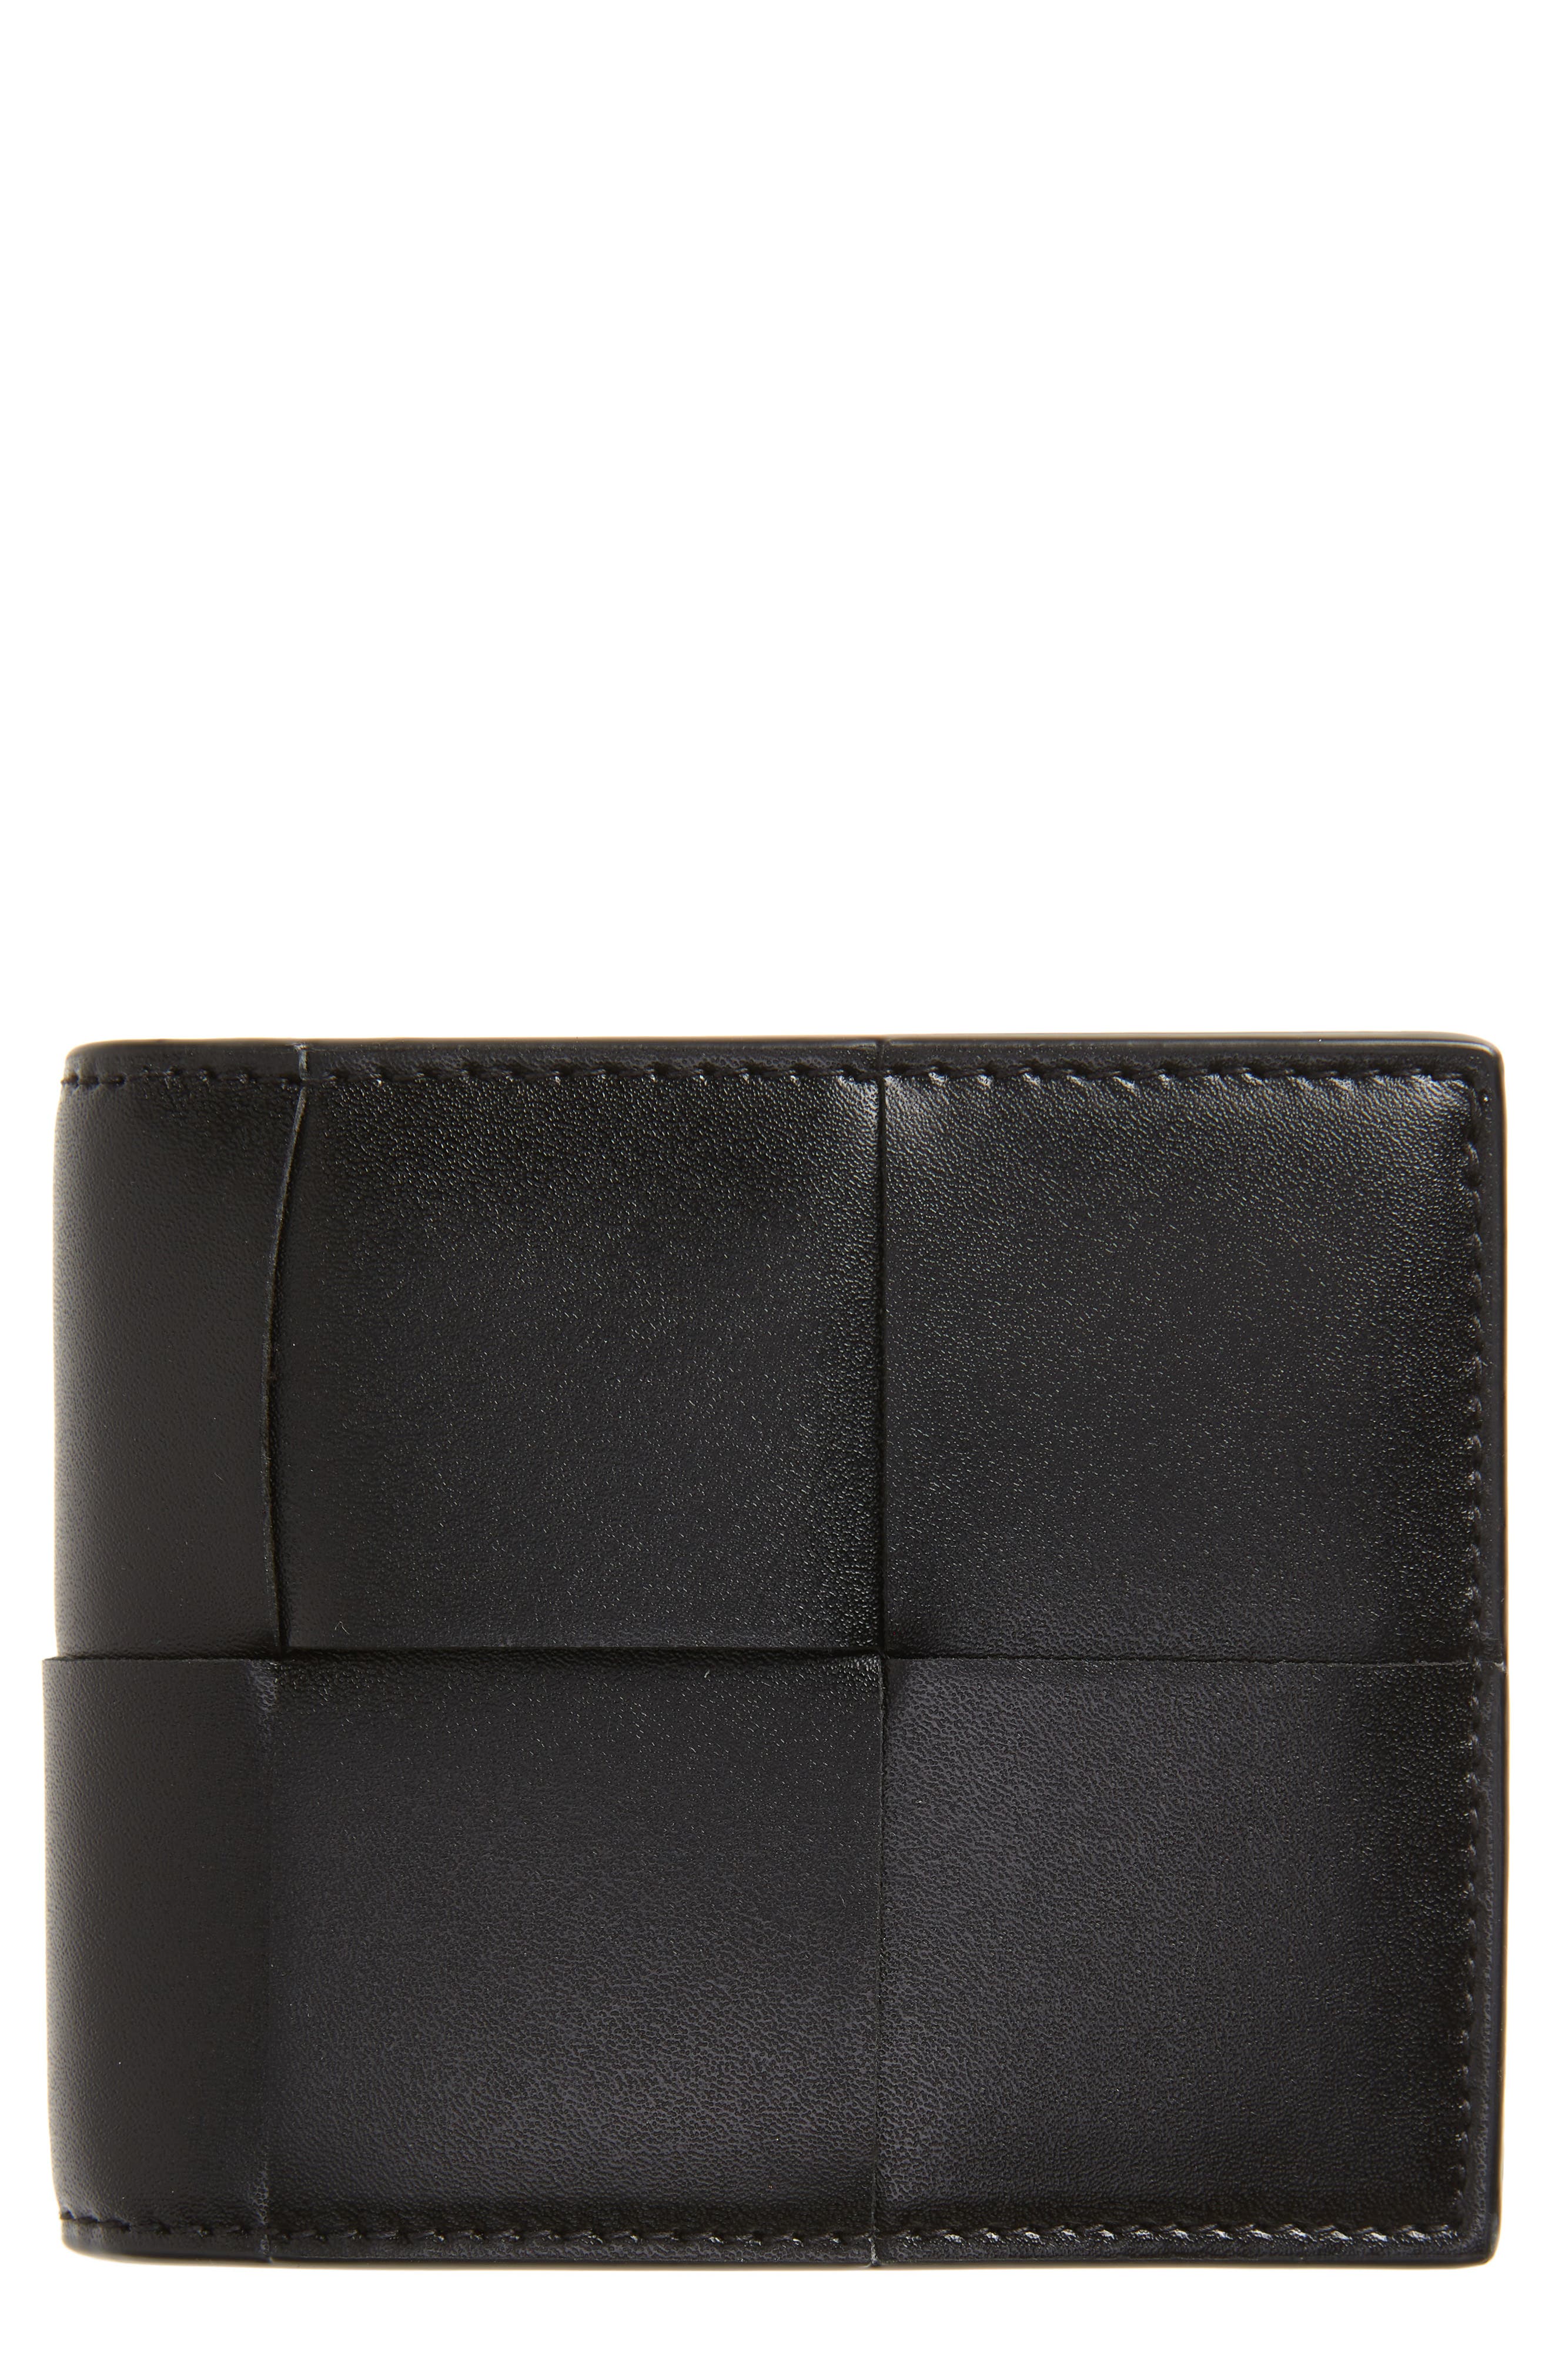 Bottega Veneta Oversize Intrecciato Leather Bifold Wallet in Black